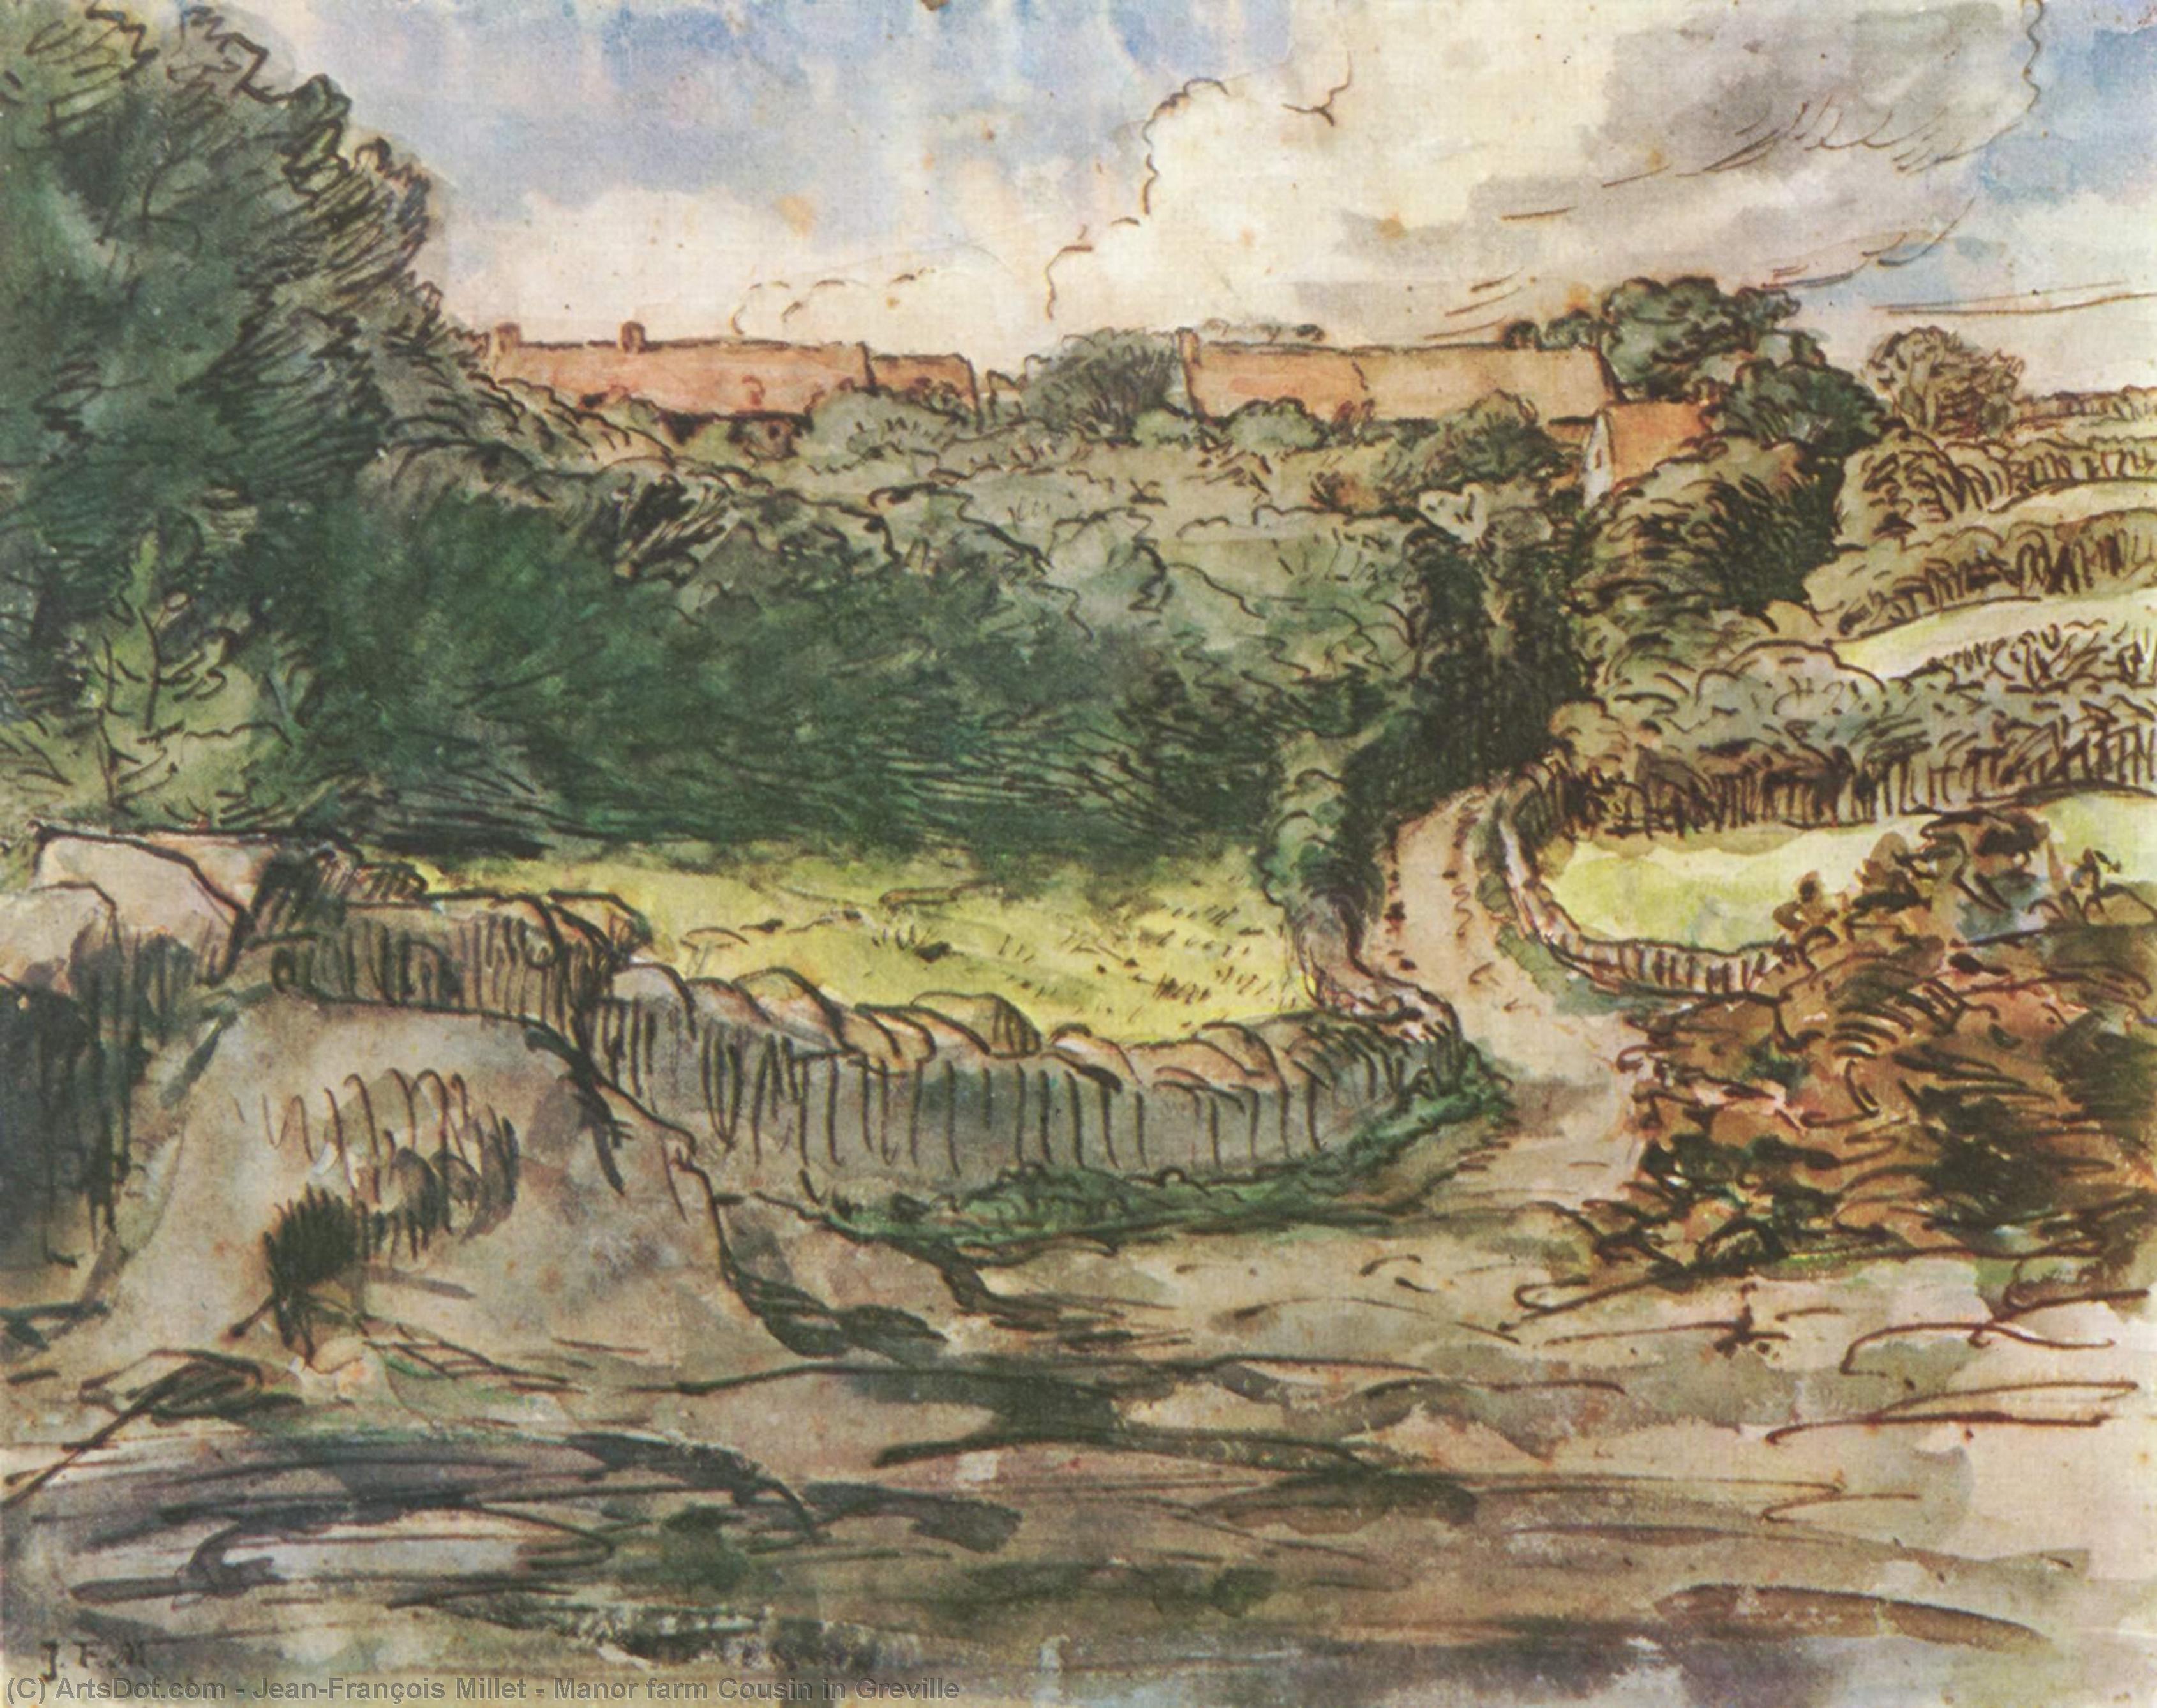 WikiOO.org - Encyclopedia of Fine Arts - Lukisan, Artwork Jean-François Millet - Manor farm Cousin in Greville